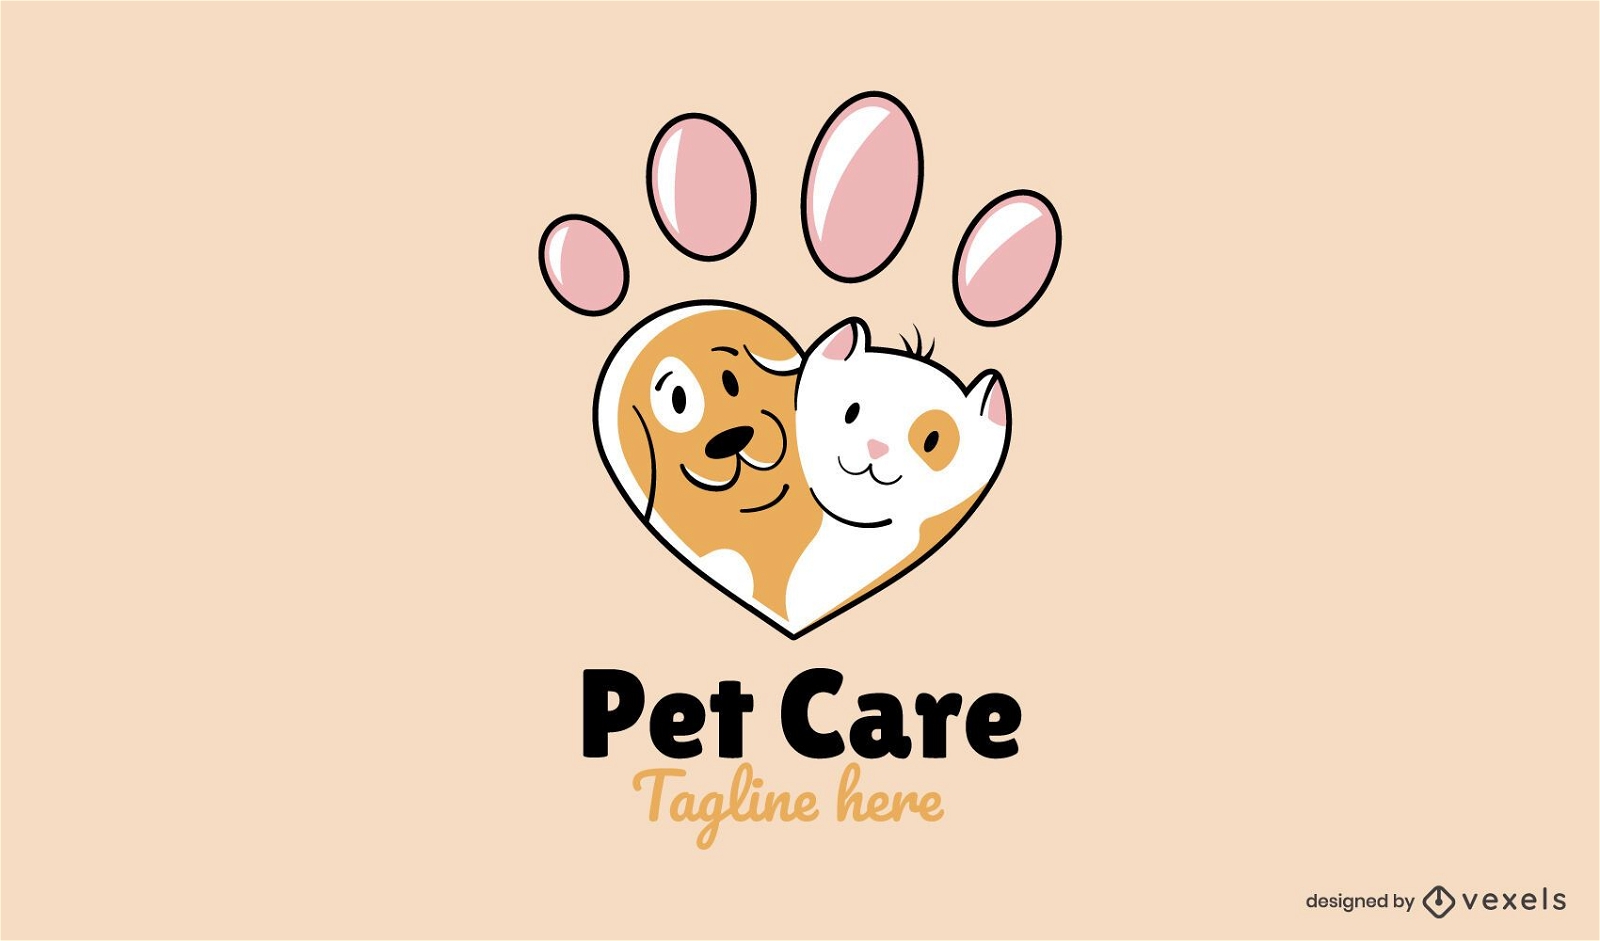 Katze und Hund s??e Pfote Herz Logo-Design